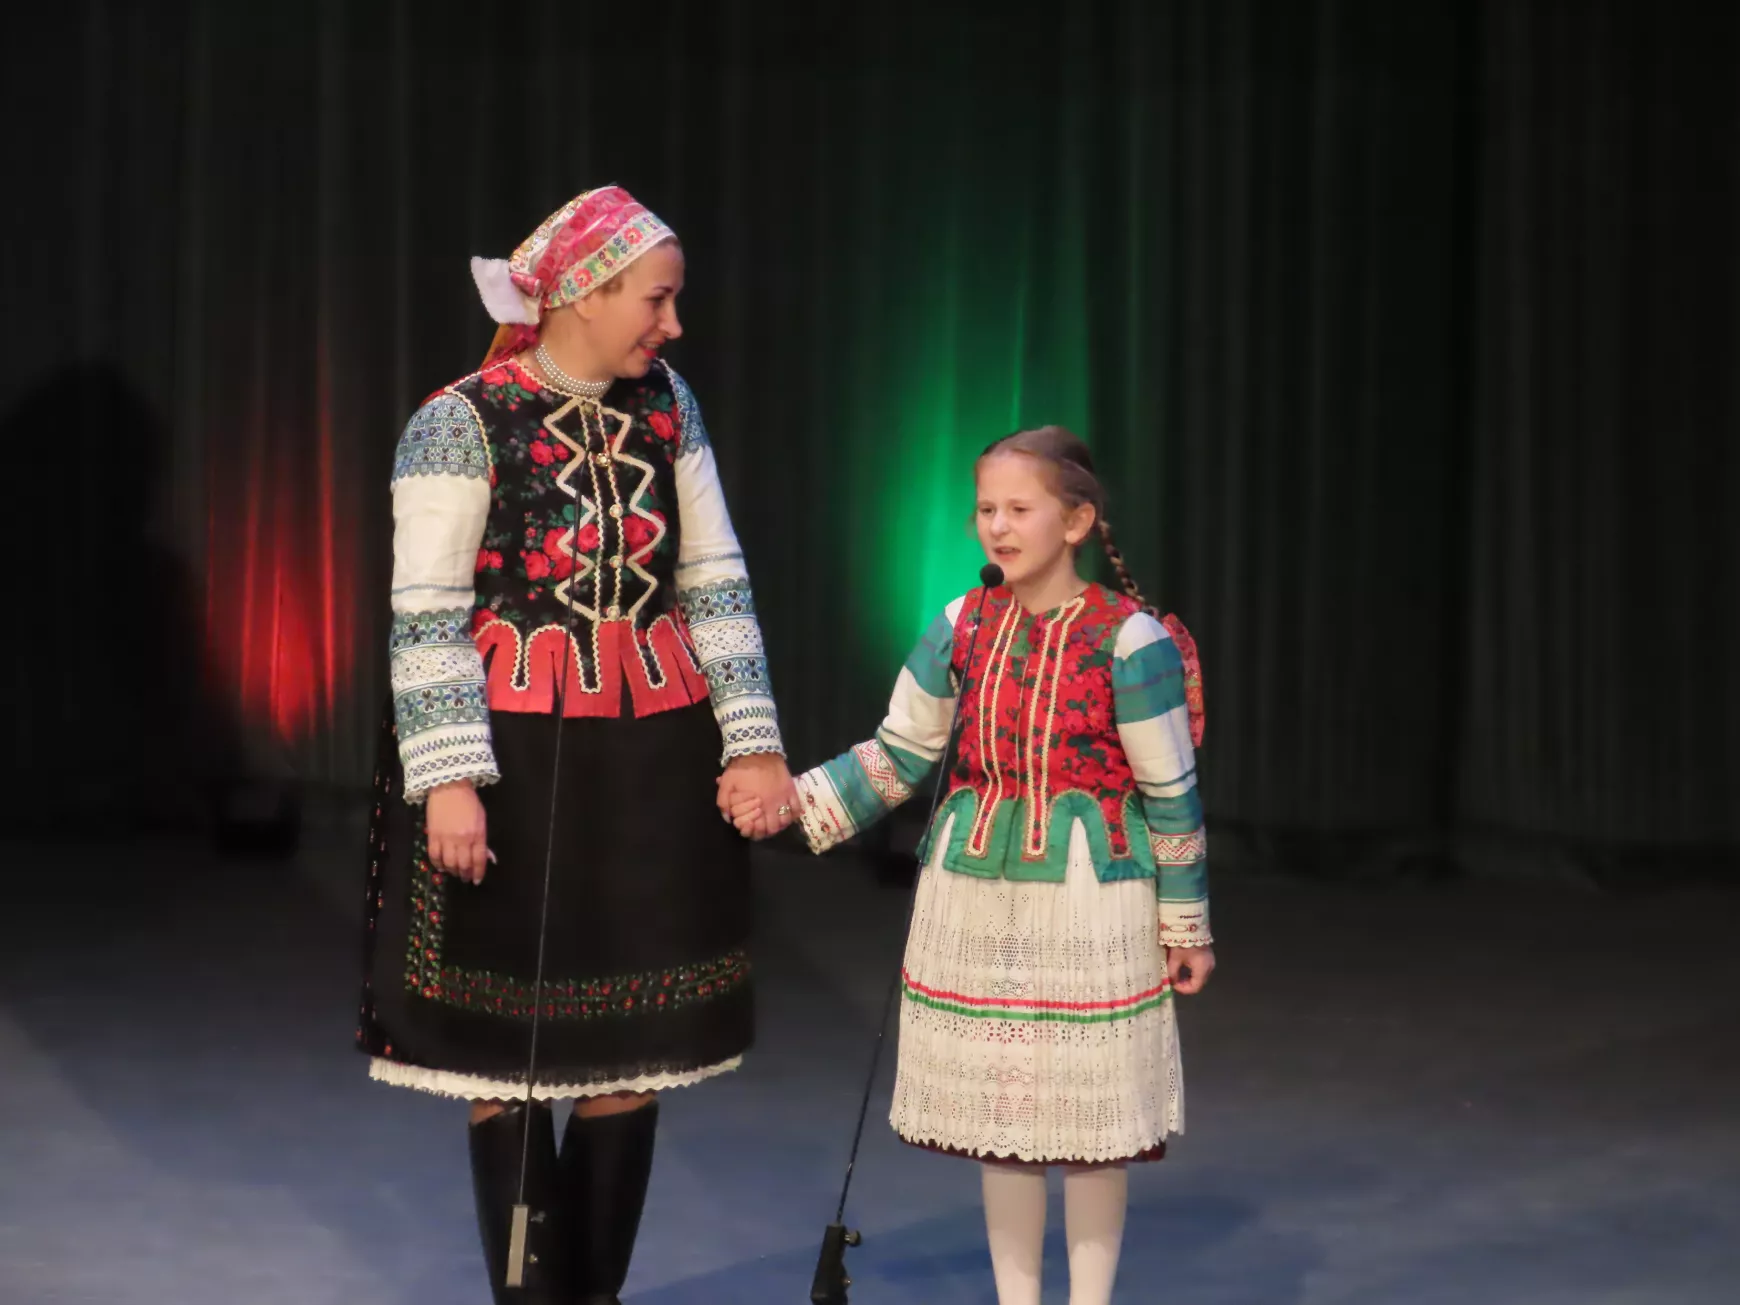 Érsekújvár - Sándor Marianna népdalénekes, hagyományőrző kislányával Olíviával.